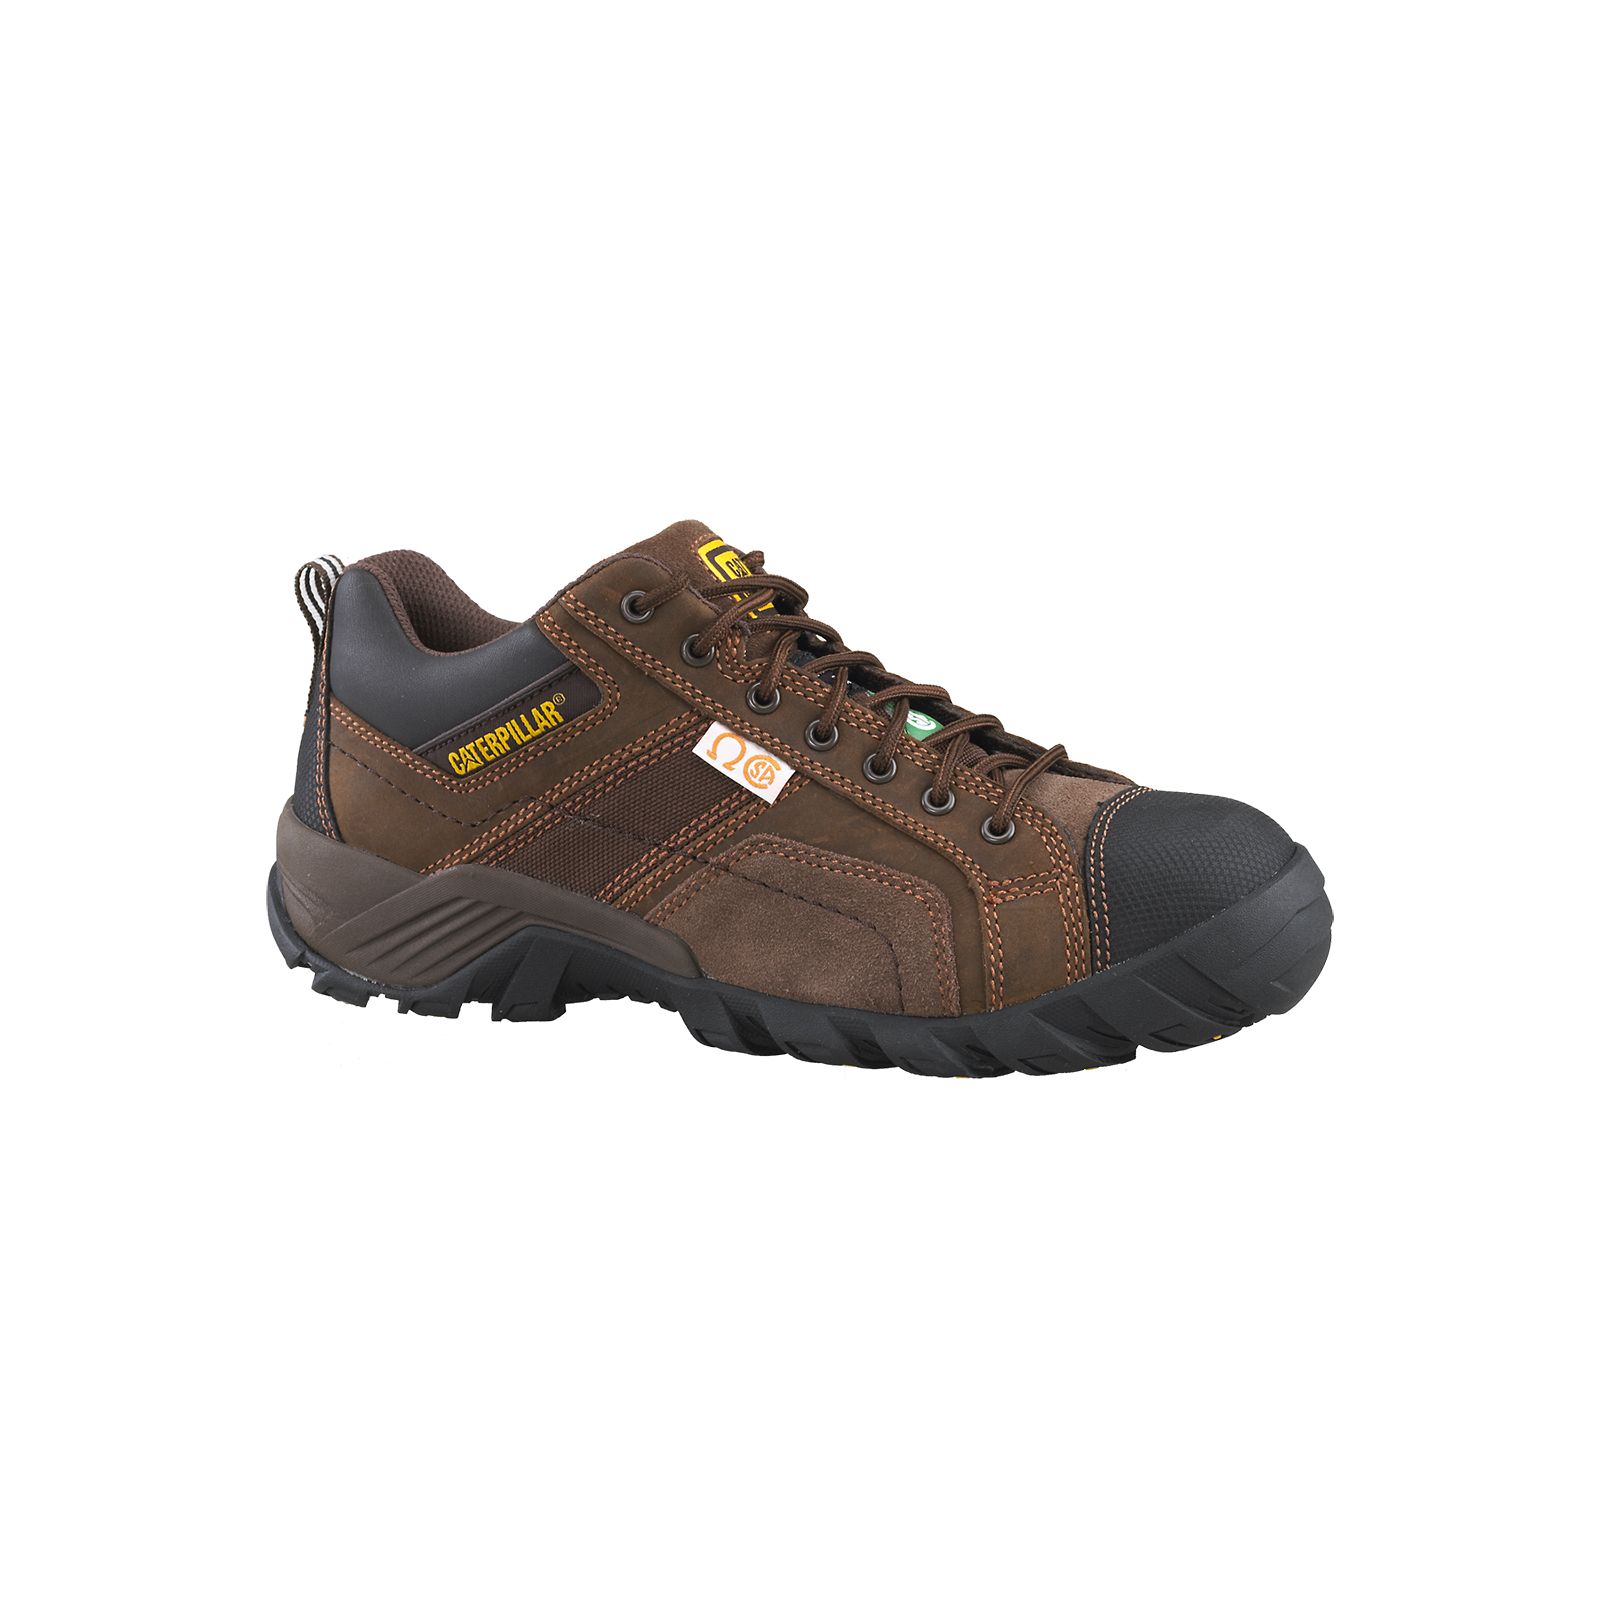 Caterpillar Argon Csa (Composite Toe, Non Metallic) Philippines - Mens Work Shoes - Dark Brown 74823XFOC